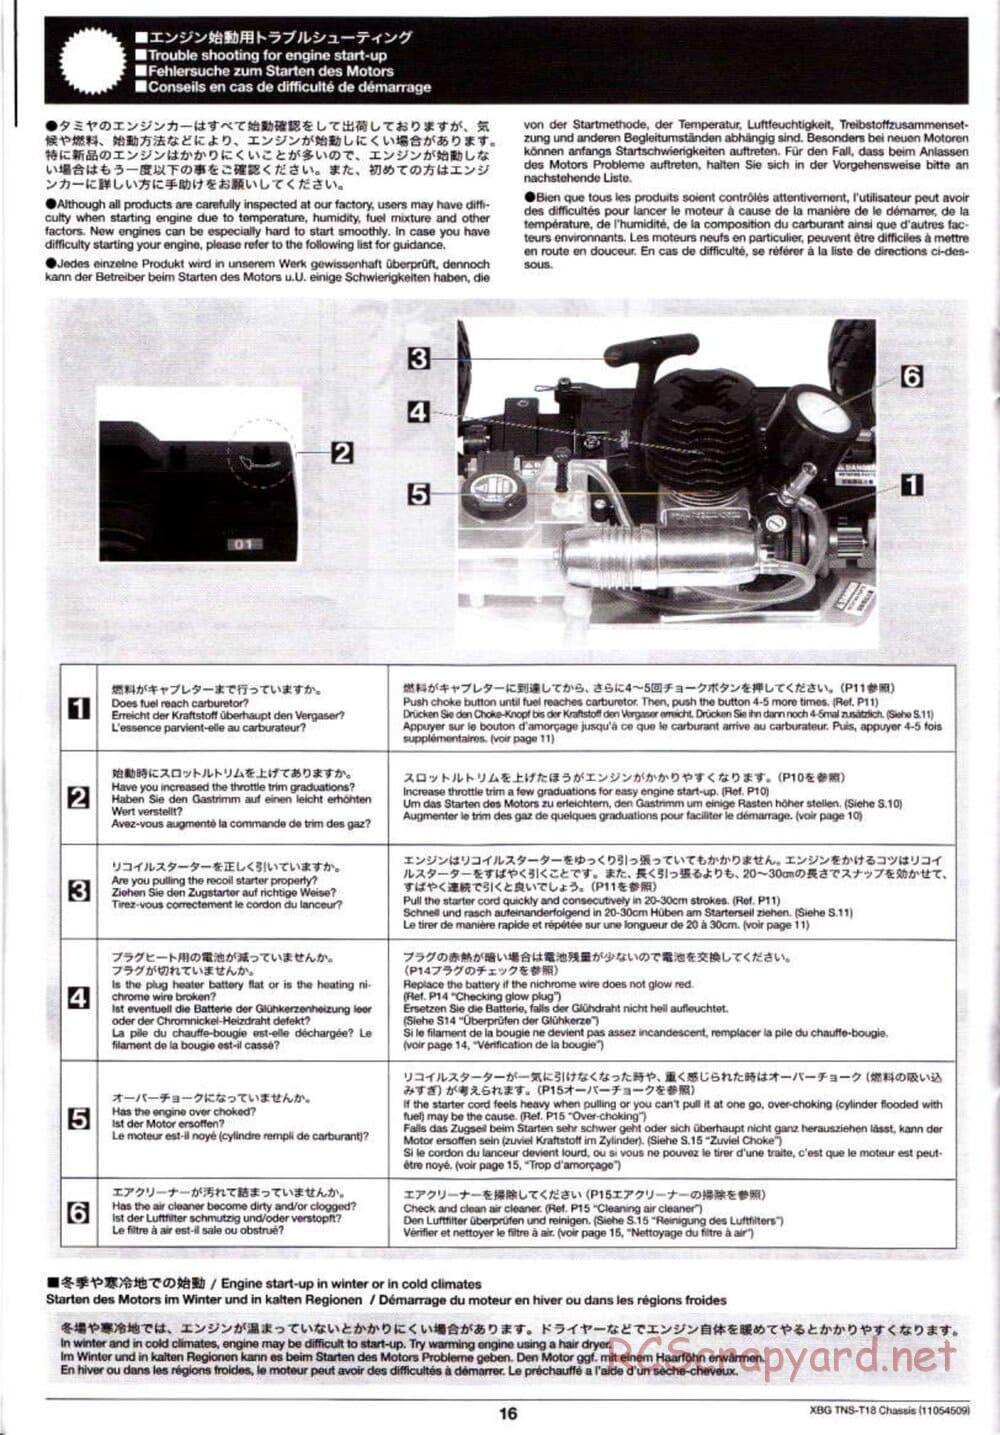 Tamiya - TNS-T18 Chassis - Manual - Page 16